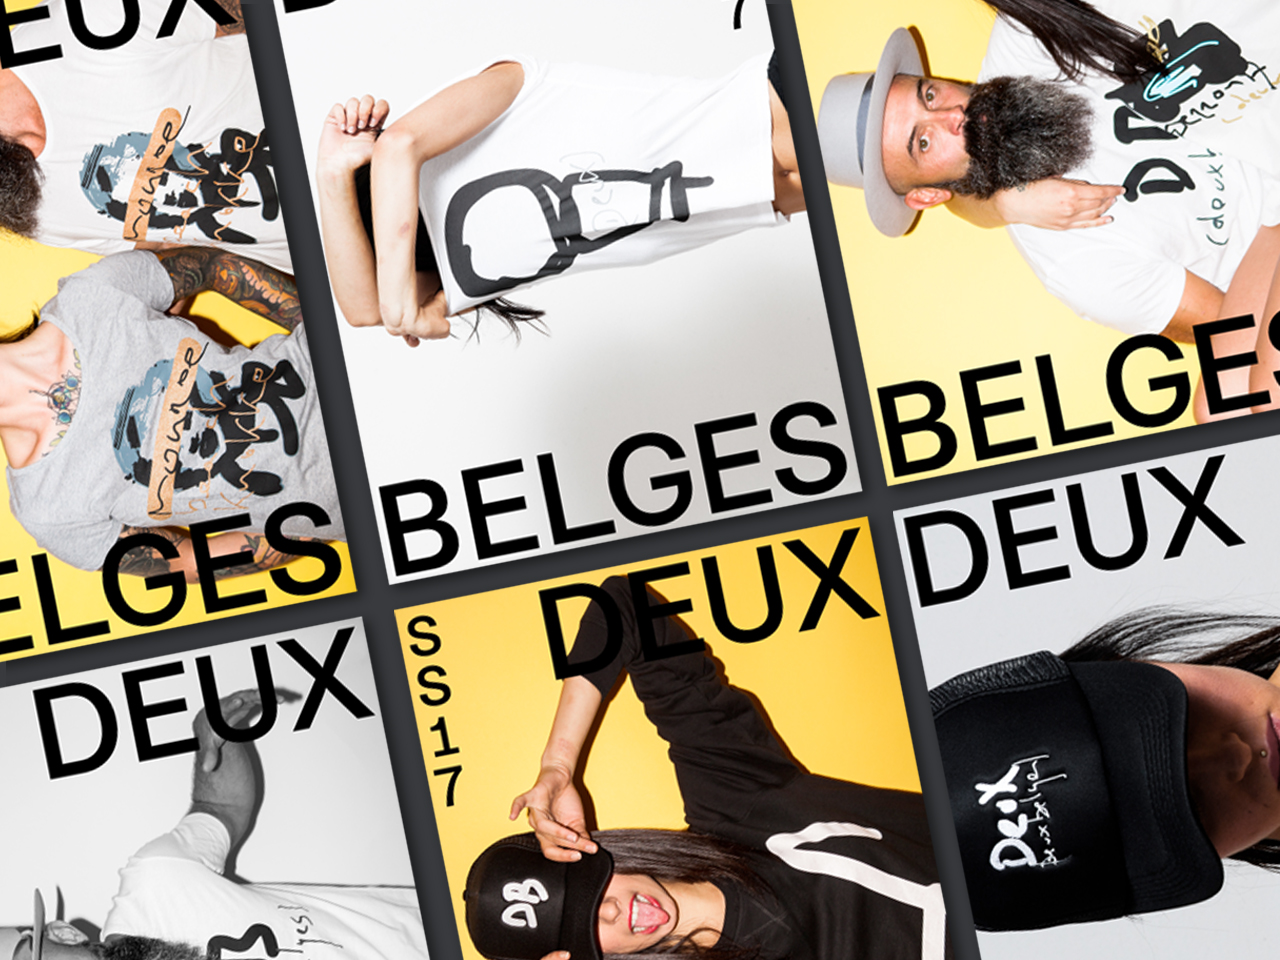 Deux Belges posters